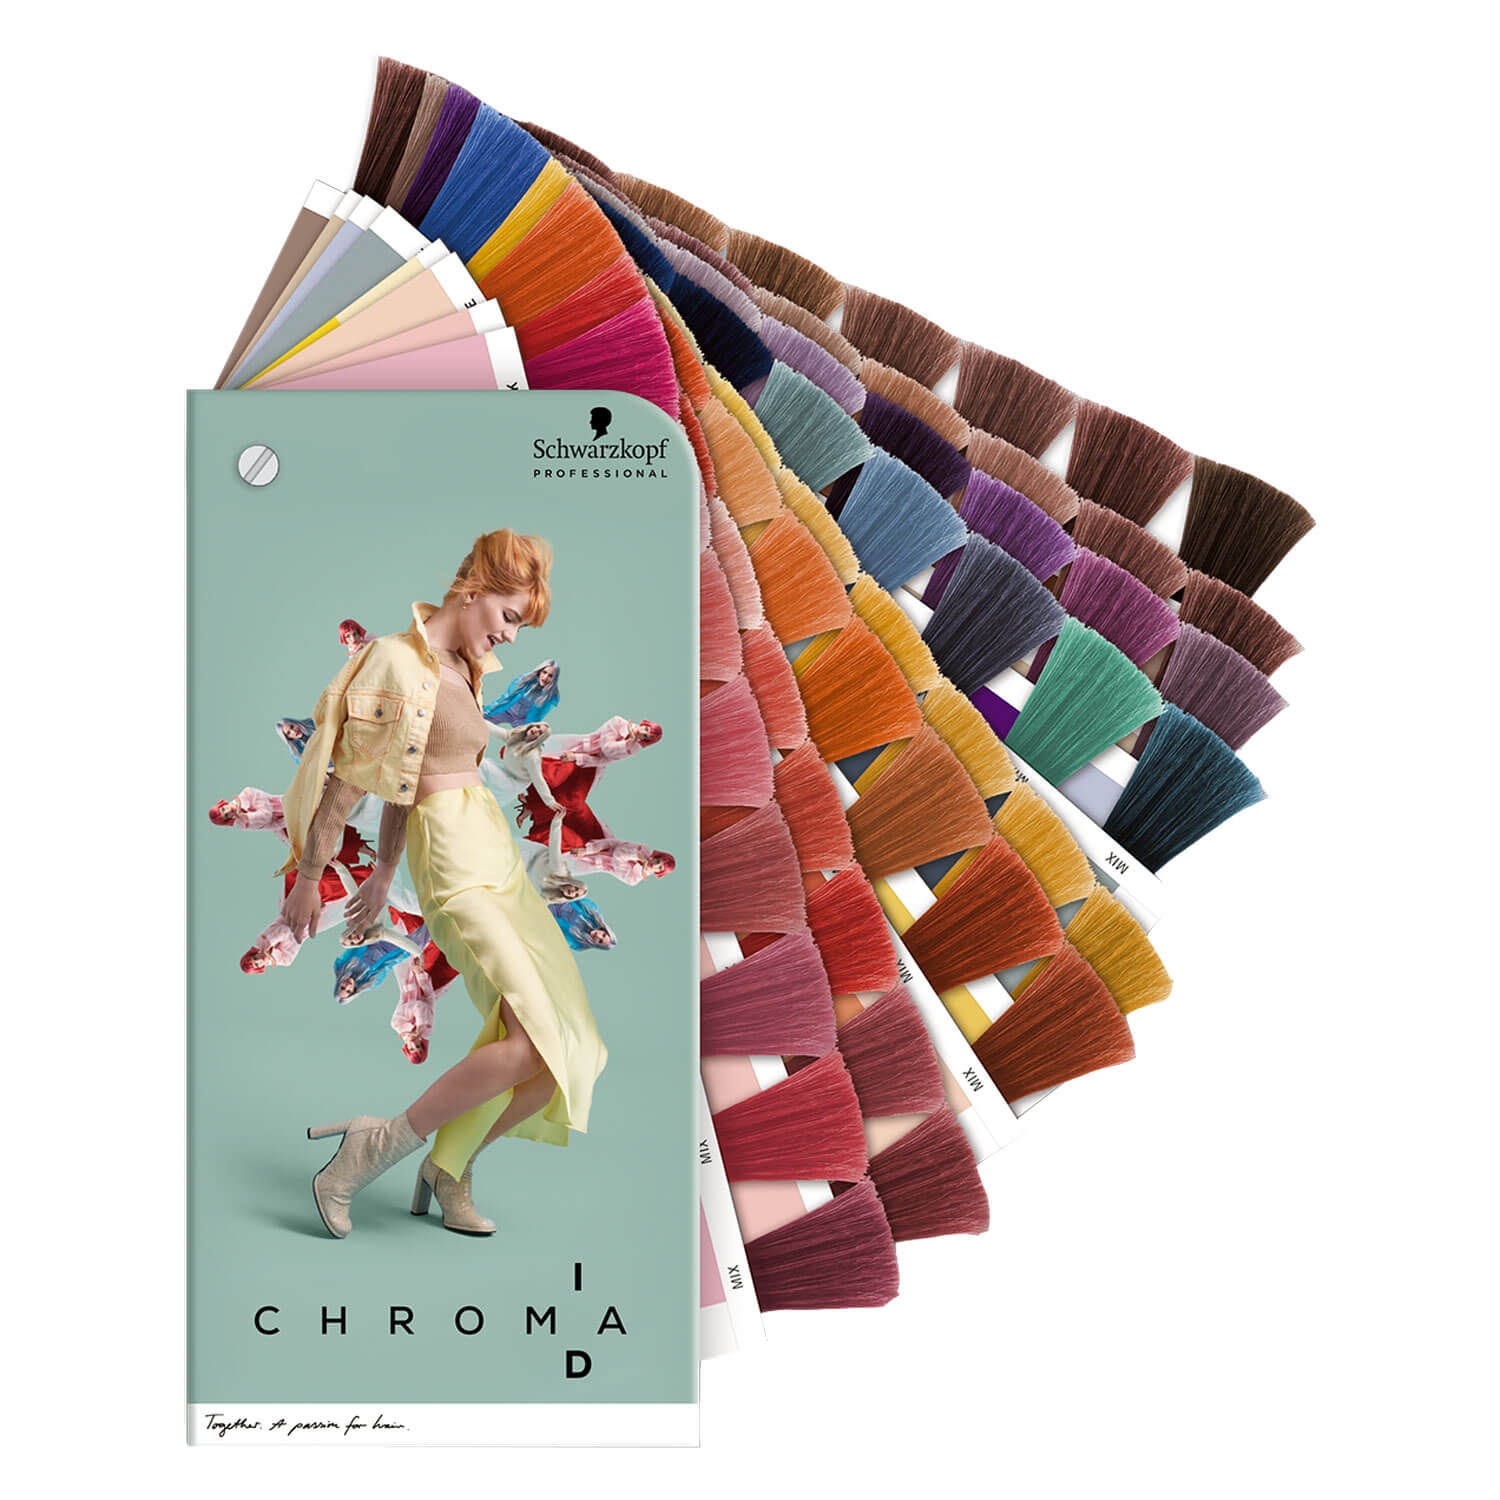 Produktbild von Salon Tools - Farbkarte Chroma ID Collection Version